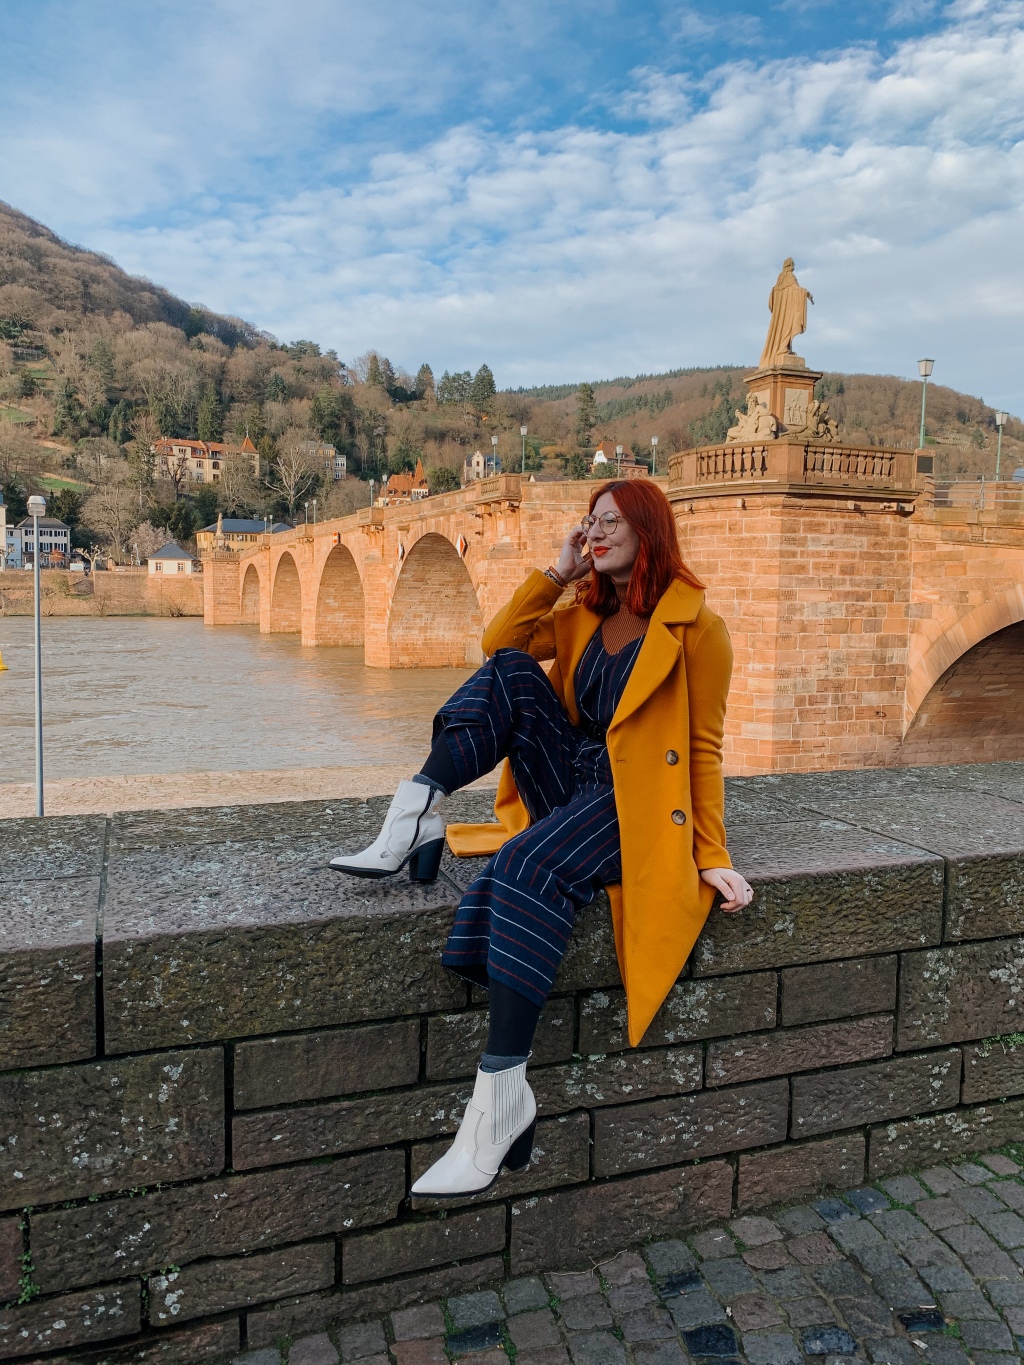 Best photo spots in Heidelberg, Germany // 2020